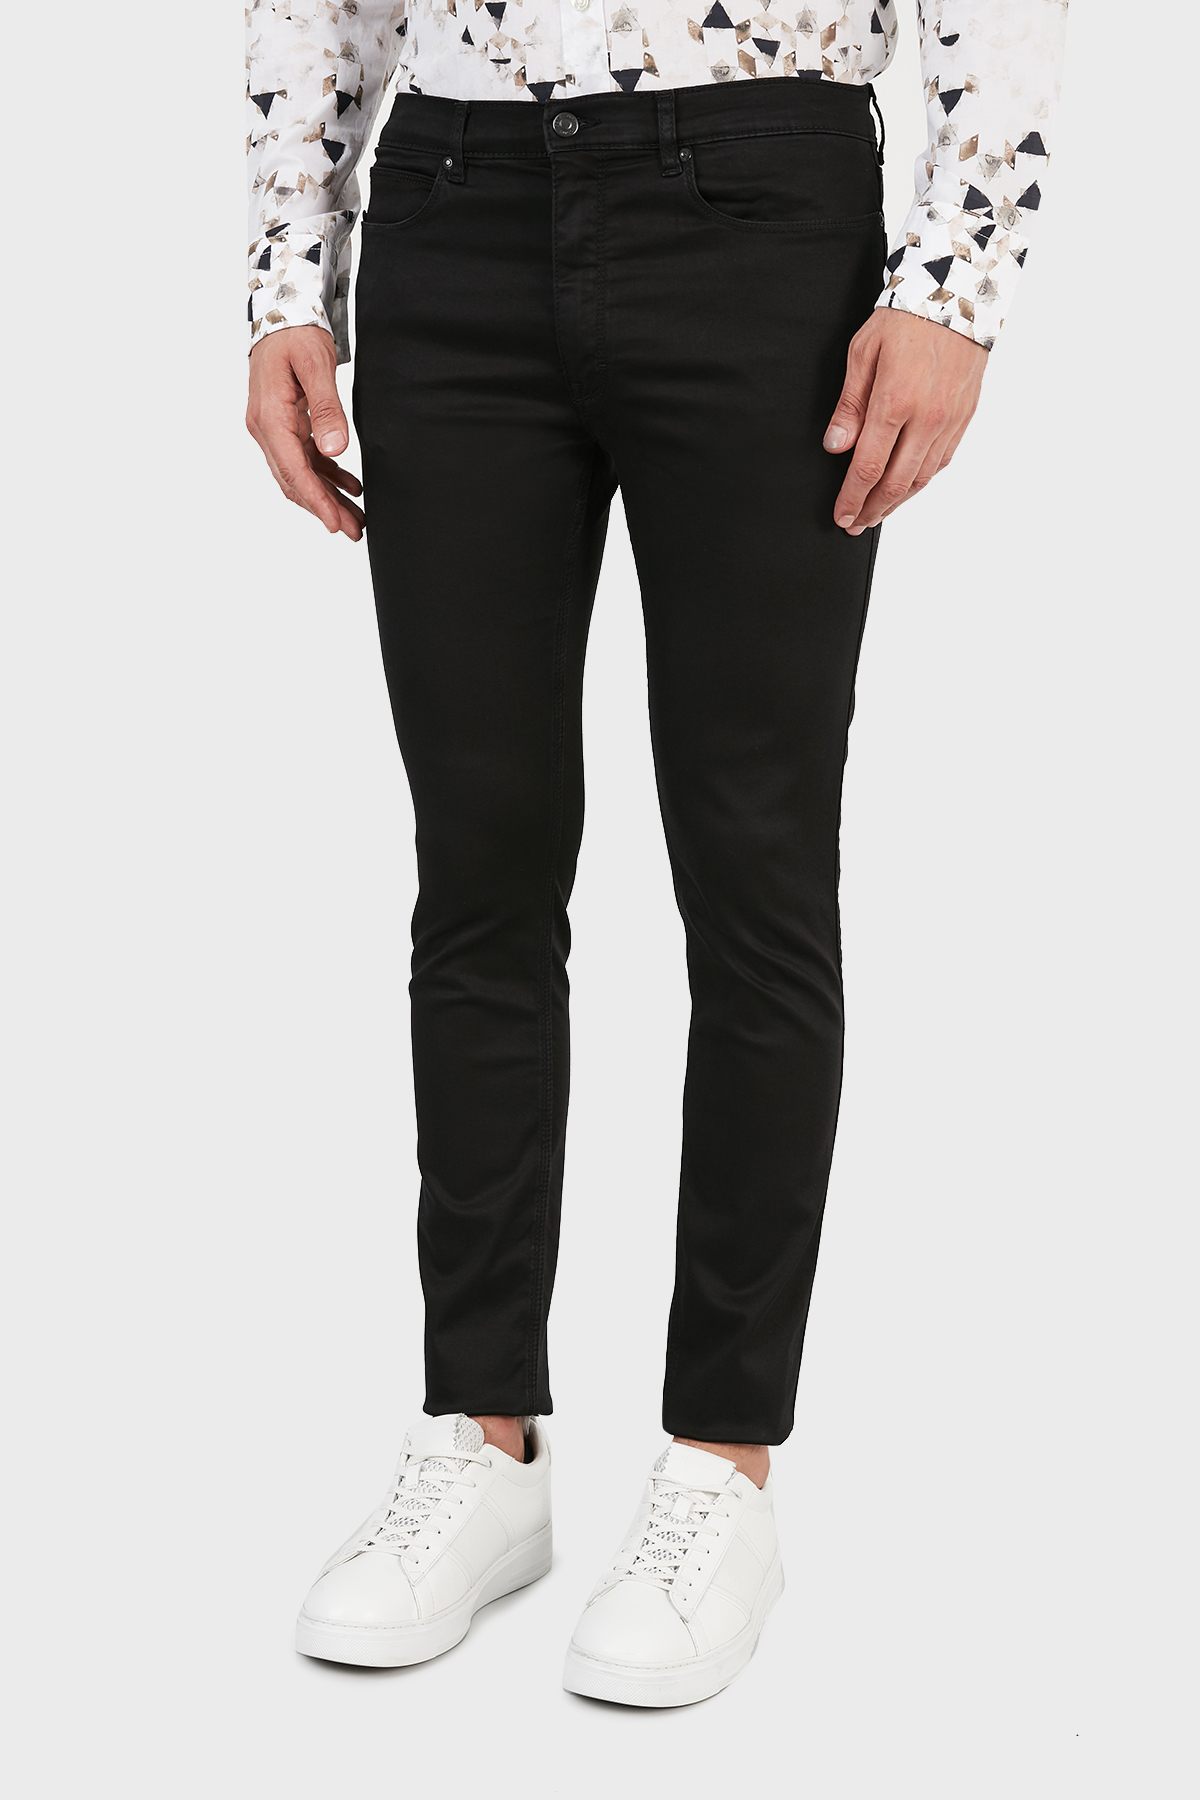 Hugo Boss Slim Fit Cepli Pamuklu Jeans Erkek Kot Pantolon 50459805 001 SİYAH